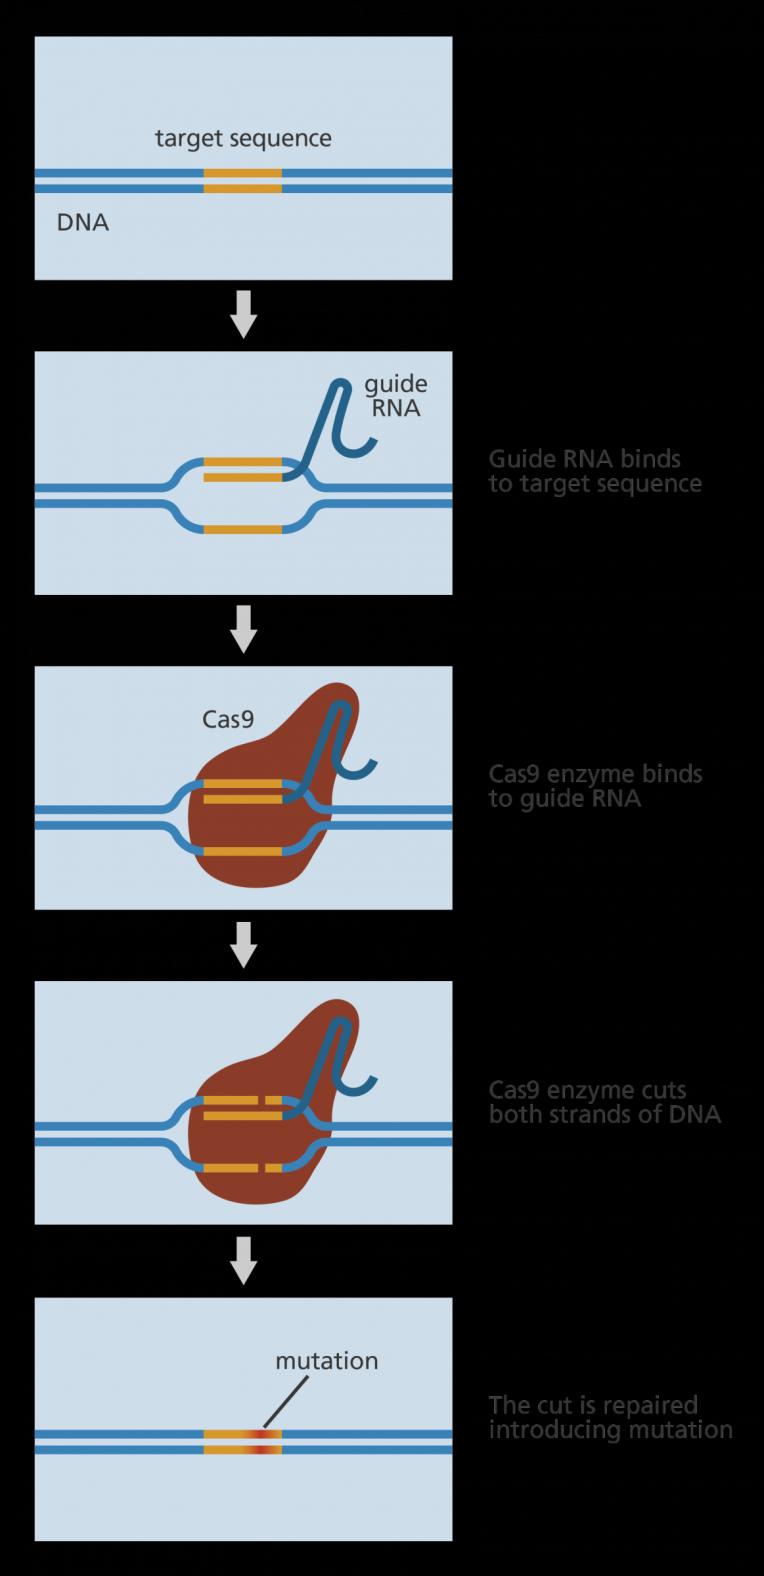 A CRISPR-Cas9 rendszer működése: 1) Az általunk megtervezett guide RNS (mely tartalmazza a módosítani kívánt DNS-szakasszal komplementer crrns-t (20 bp), a fix tracrrns-t, és a PAM motívumot (NGG))